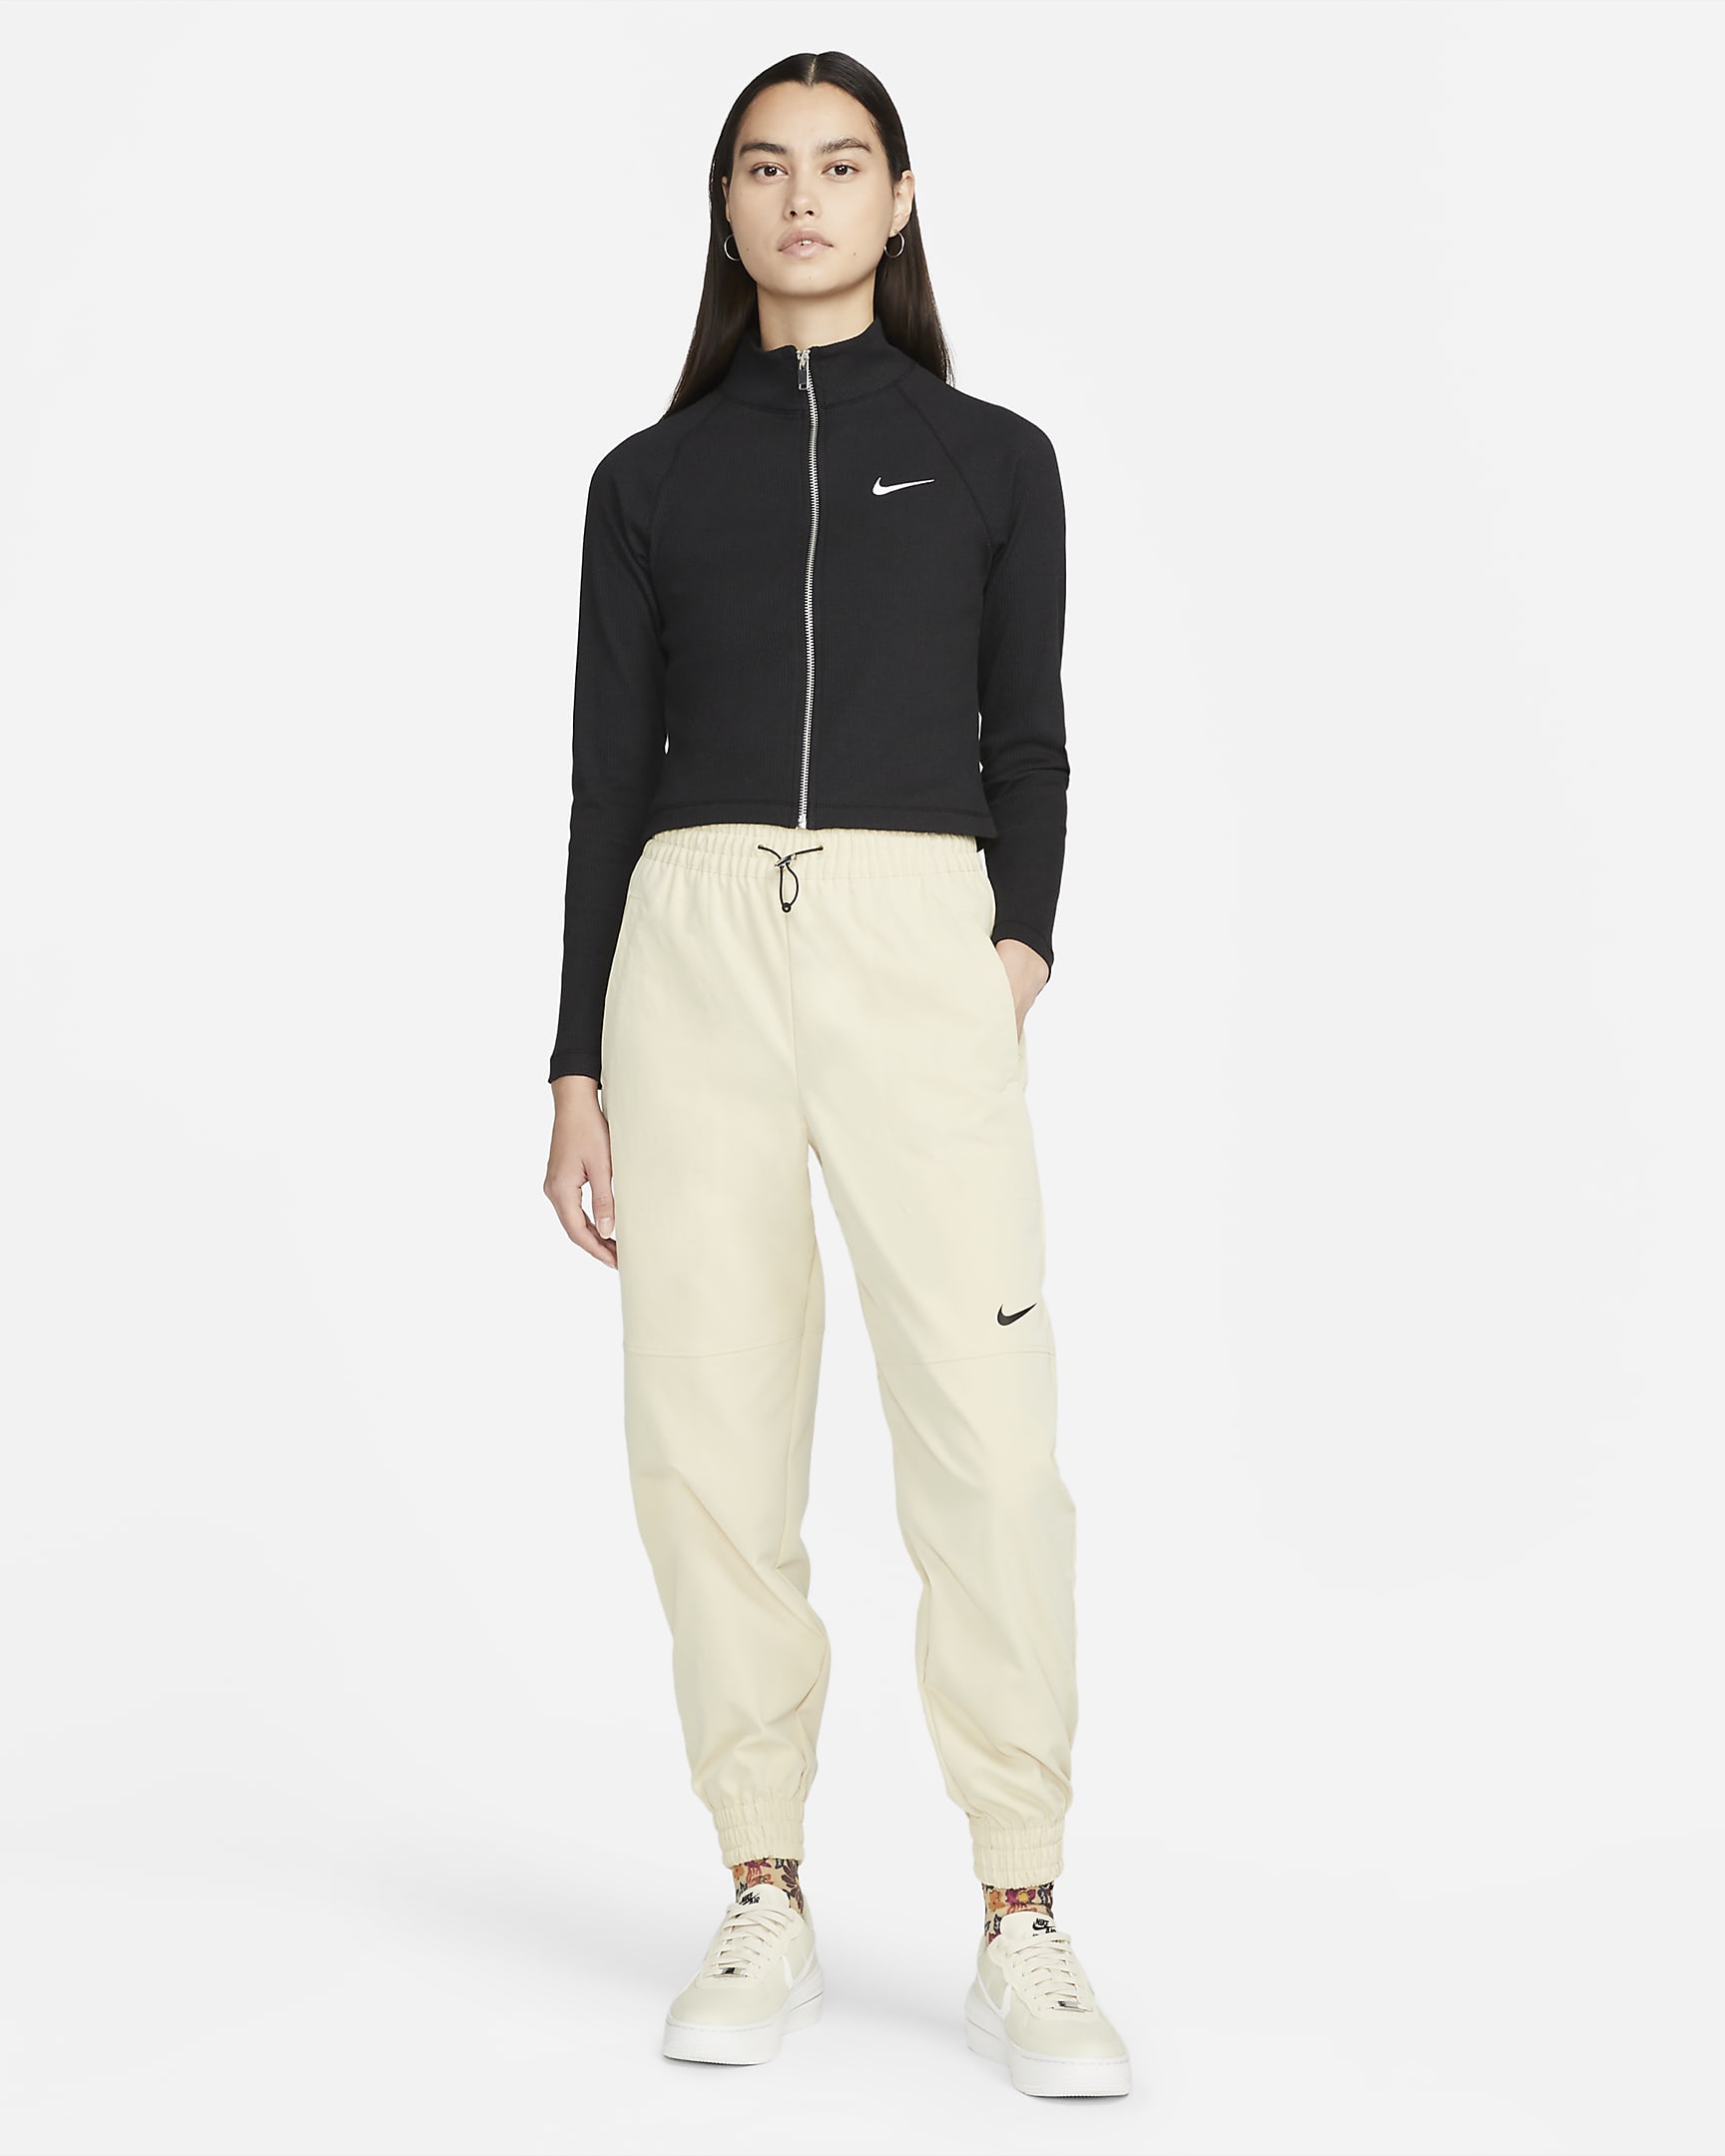 Nike Sportswear Trend Women's Jacket. Nike AE